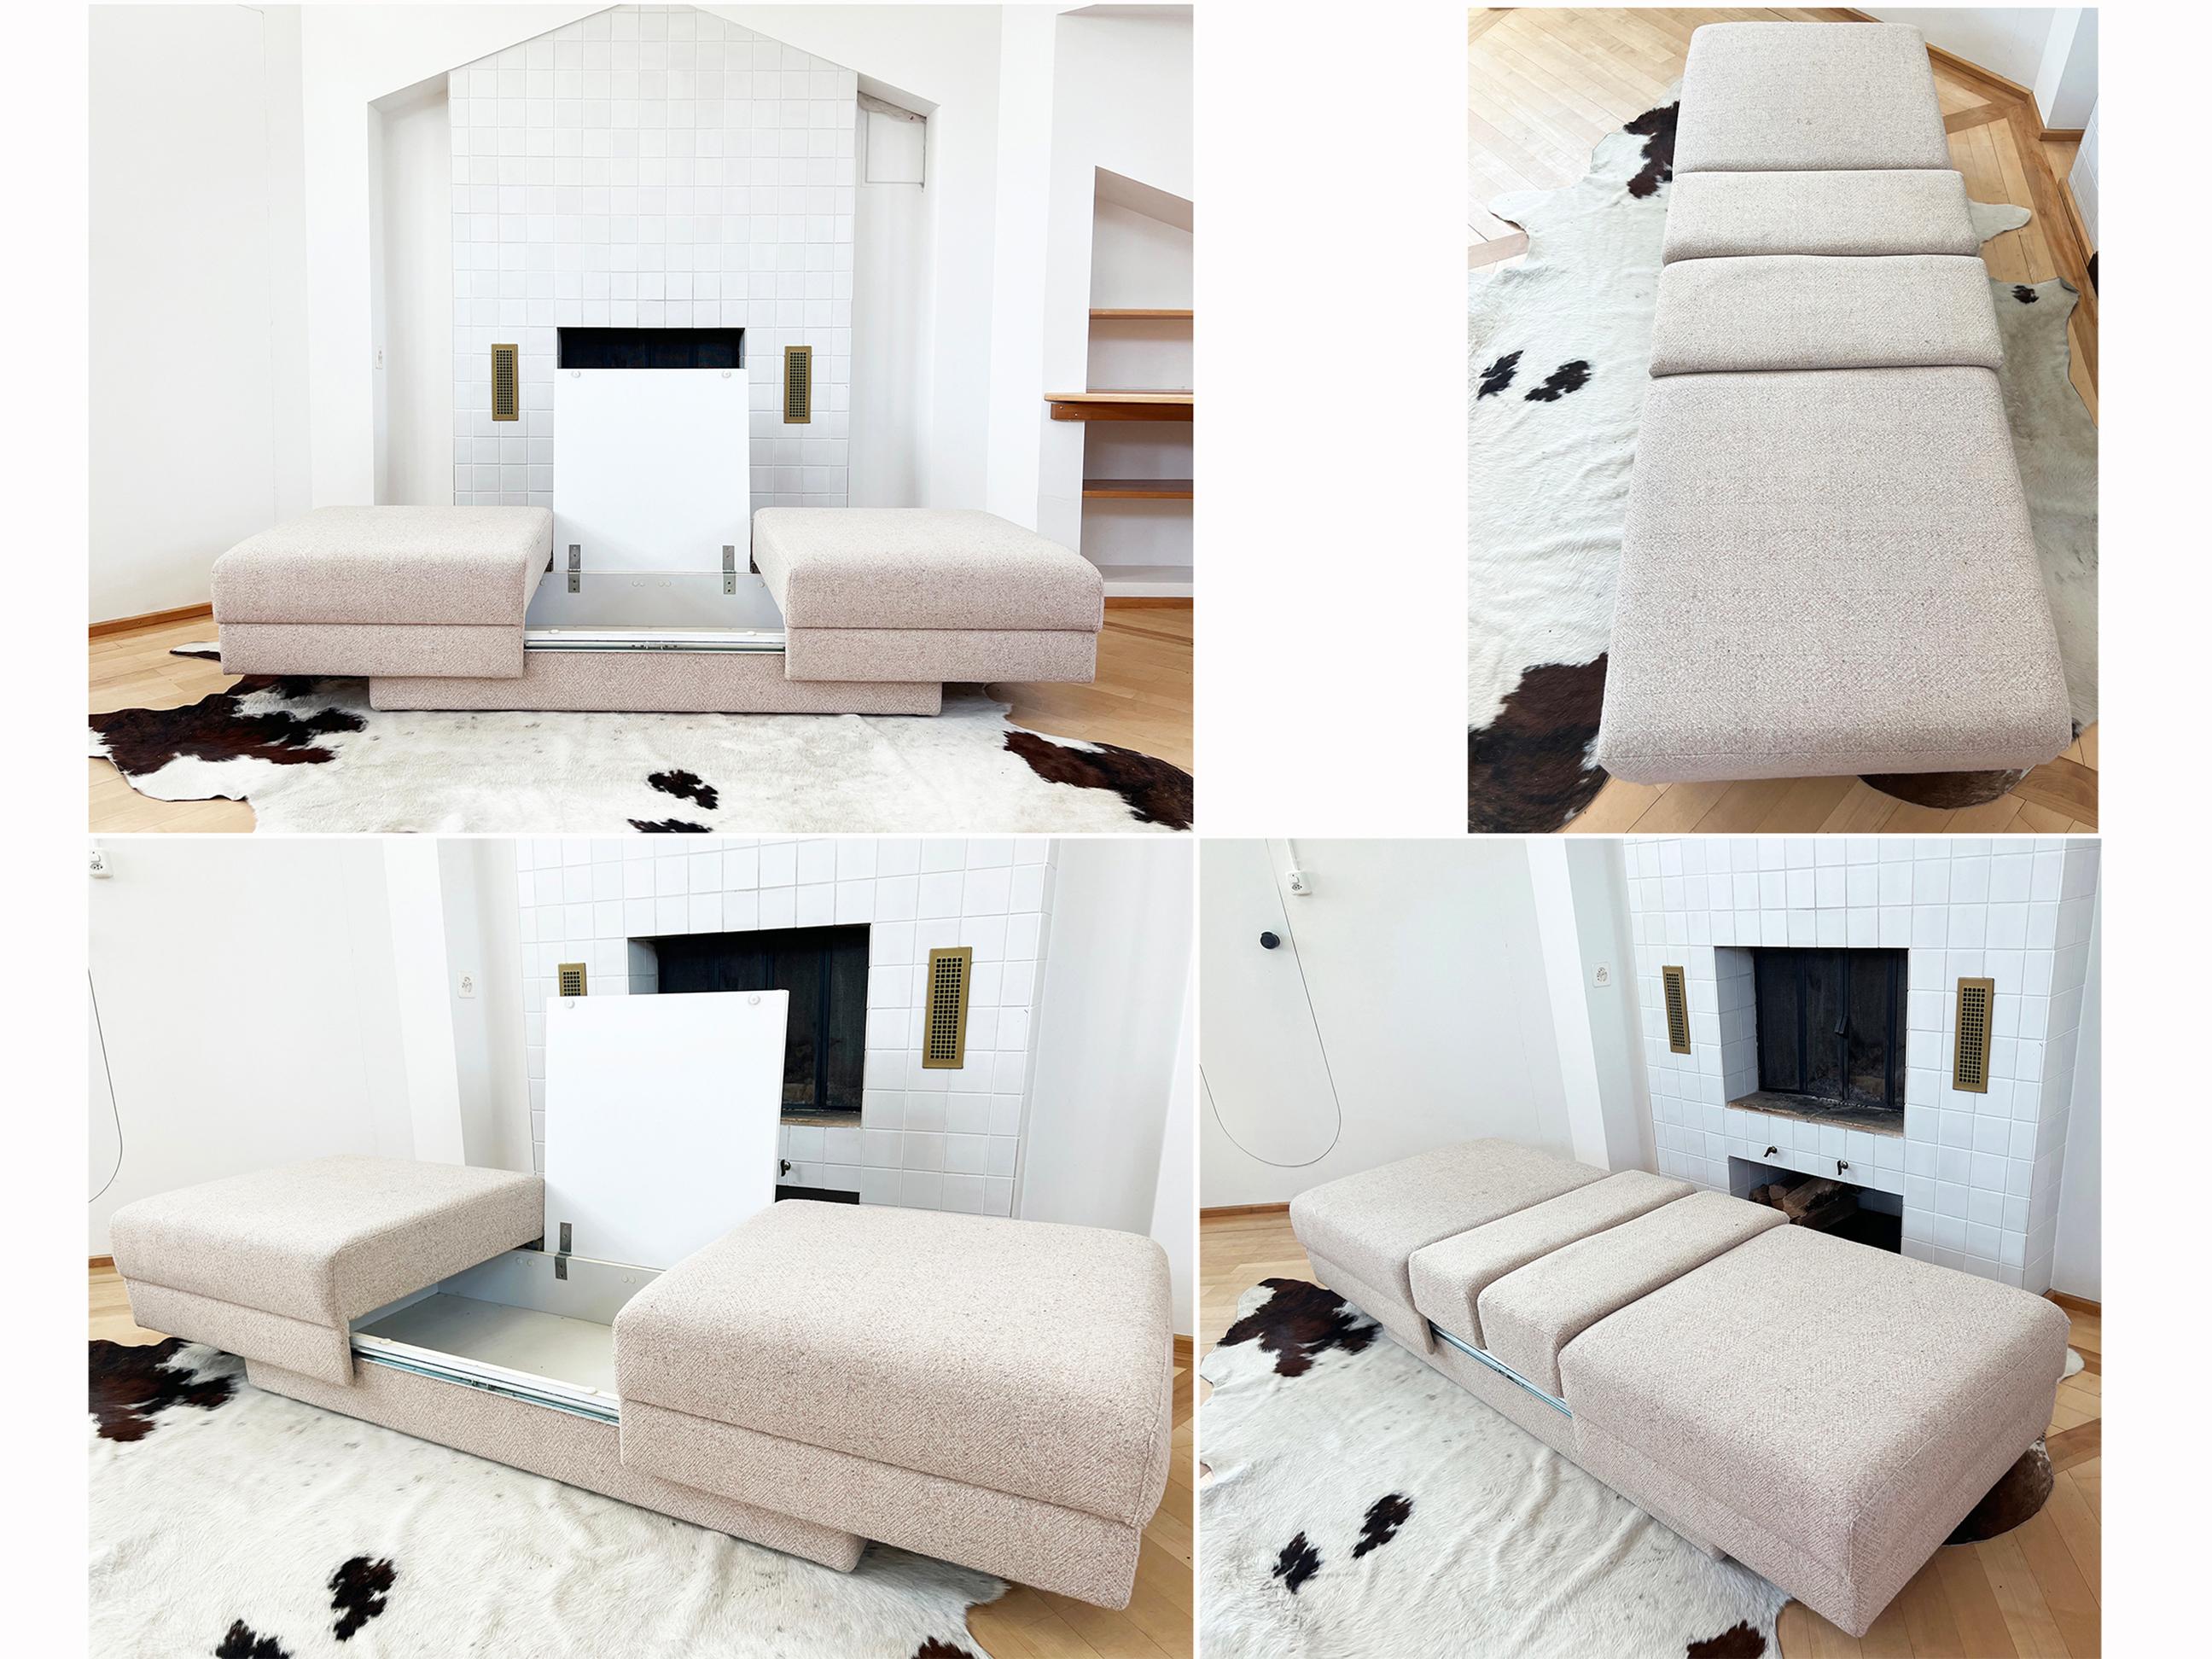 Ce canapé/lit de jour/chaises longues au design unique du milieu du siècle, avec une table entre les deux, est incroyablement polyvalent et minimal ! 

Un beau design fonctionnel car cette pièce de design très cool peut être utilisée comme :
-Un